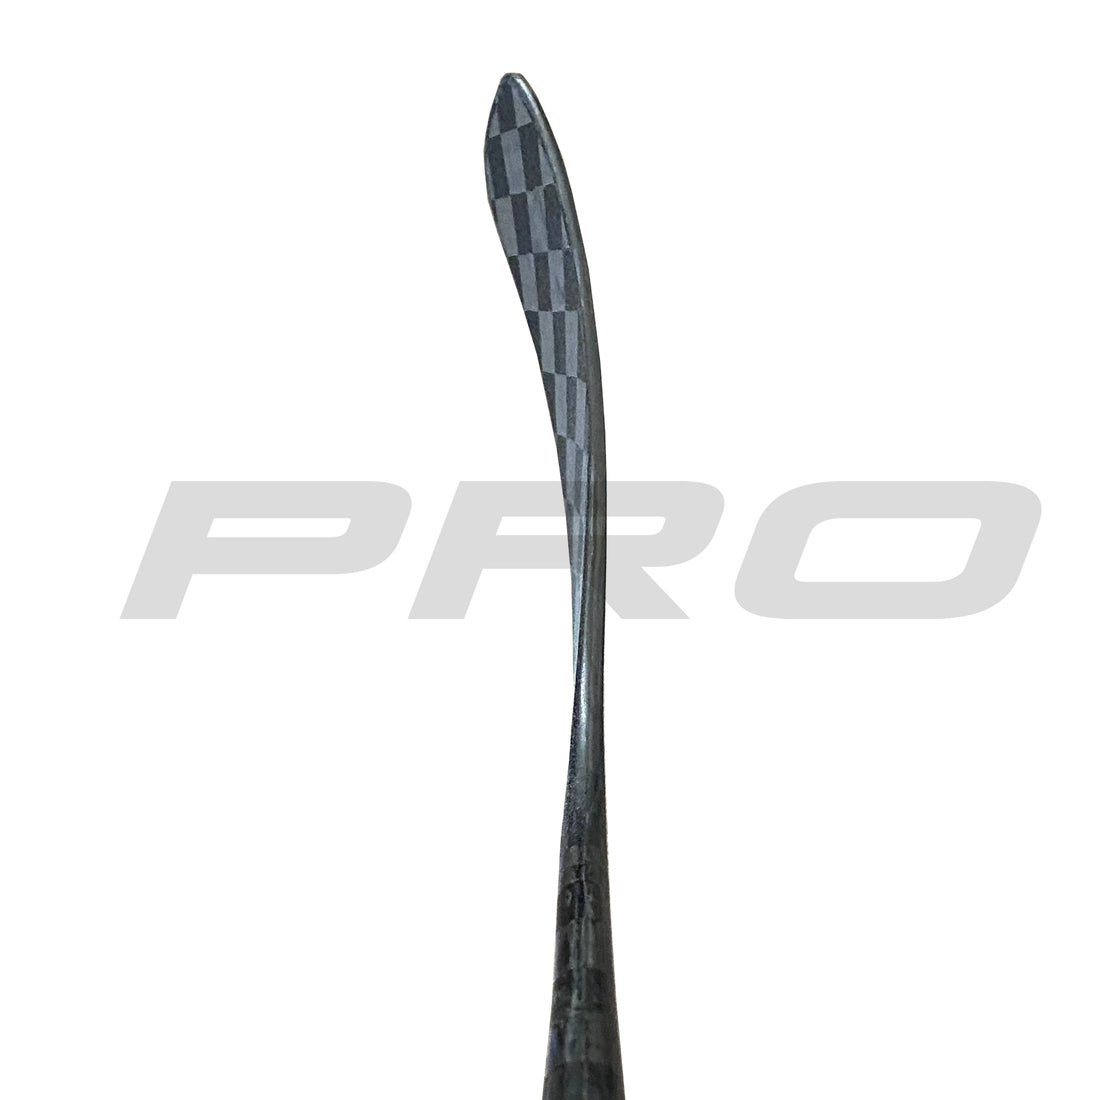 PRO97 JR (ST: Mcdavid Pro) - Red Line Jr (310 G) - Pro Stock Hockey Stick - Right